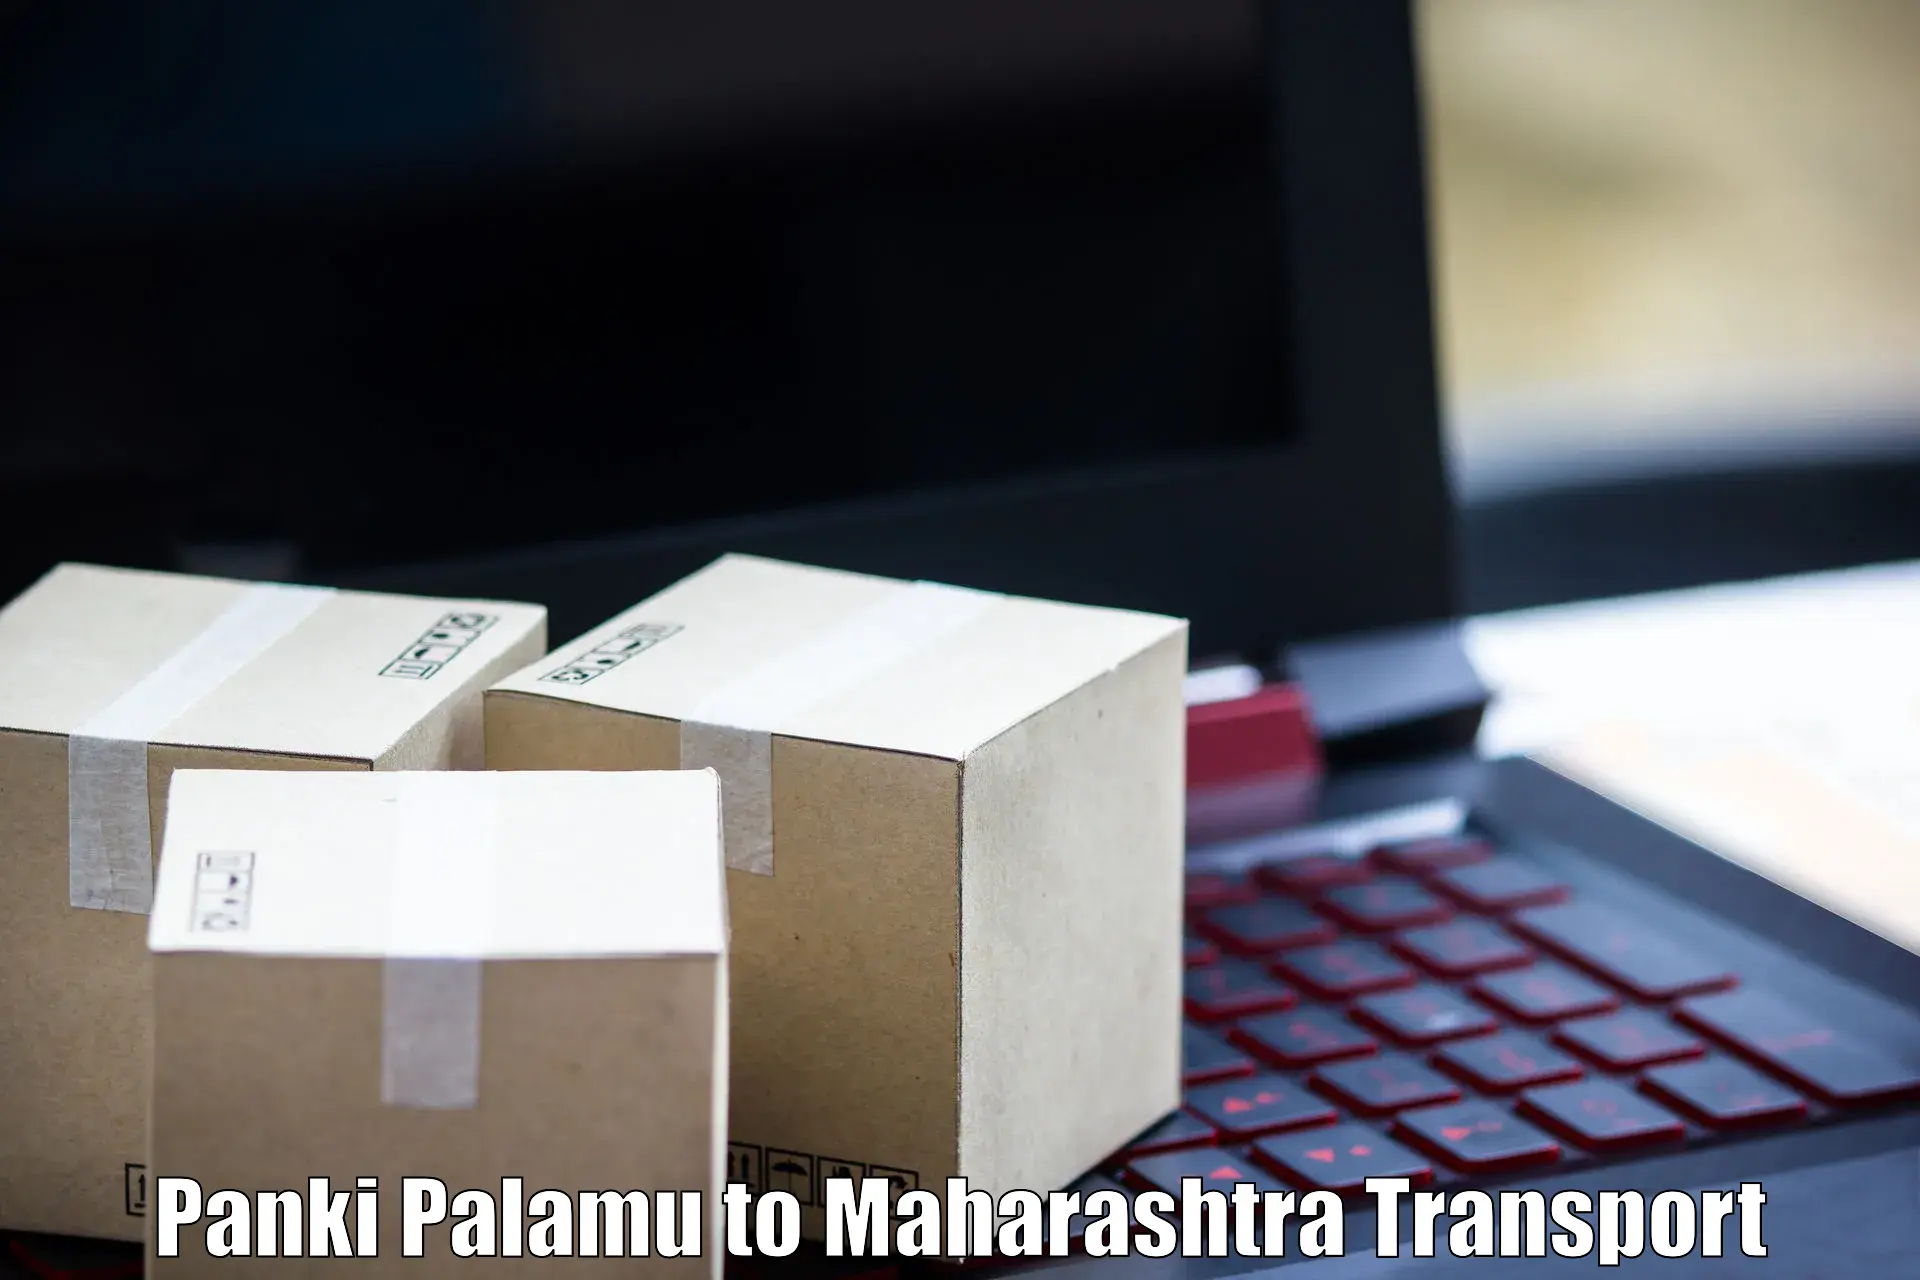 Transportation services Panki Palamu to Shrivardhan